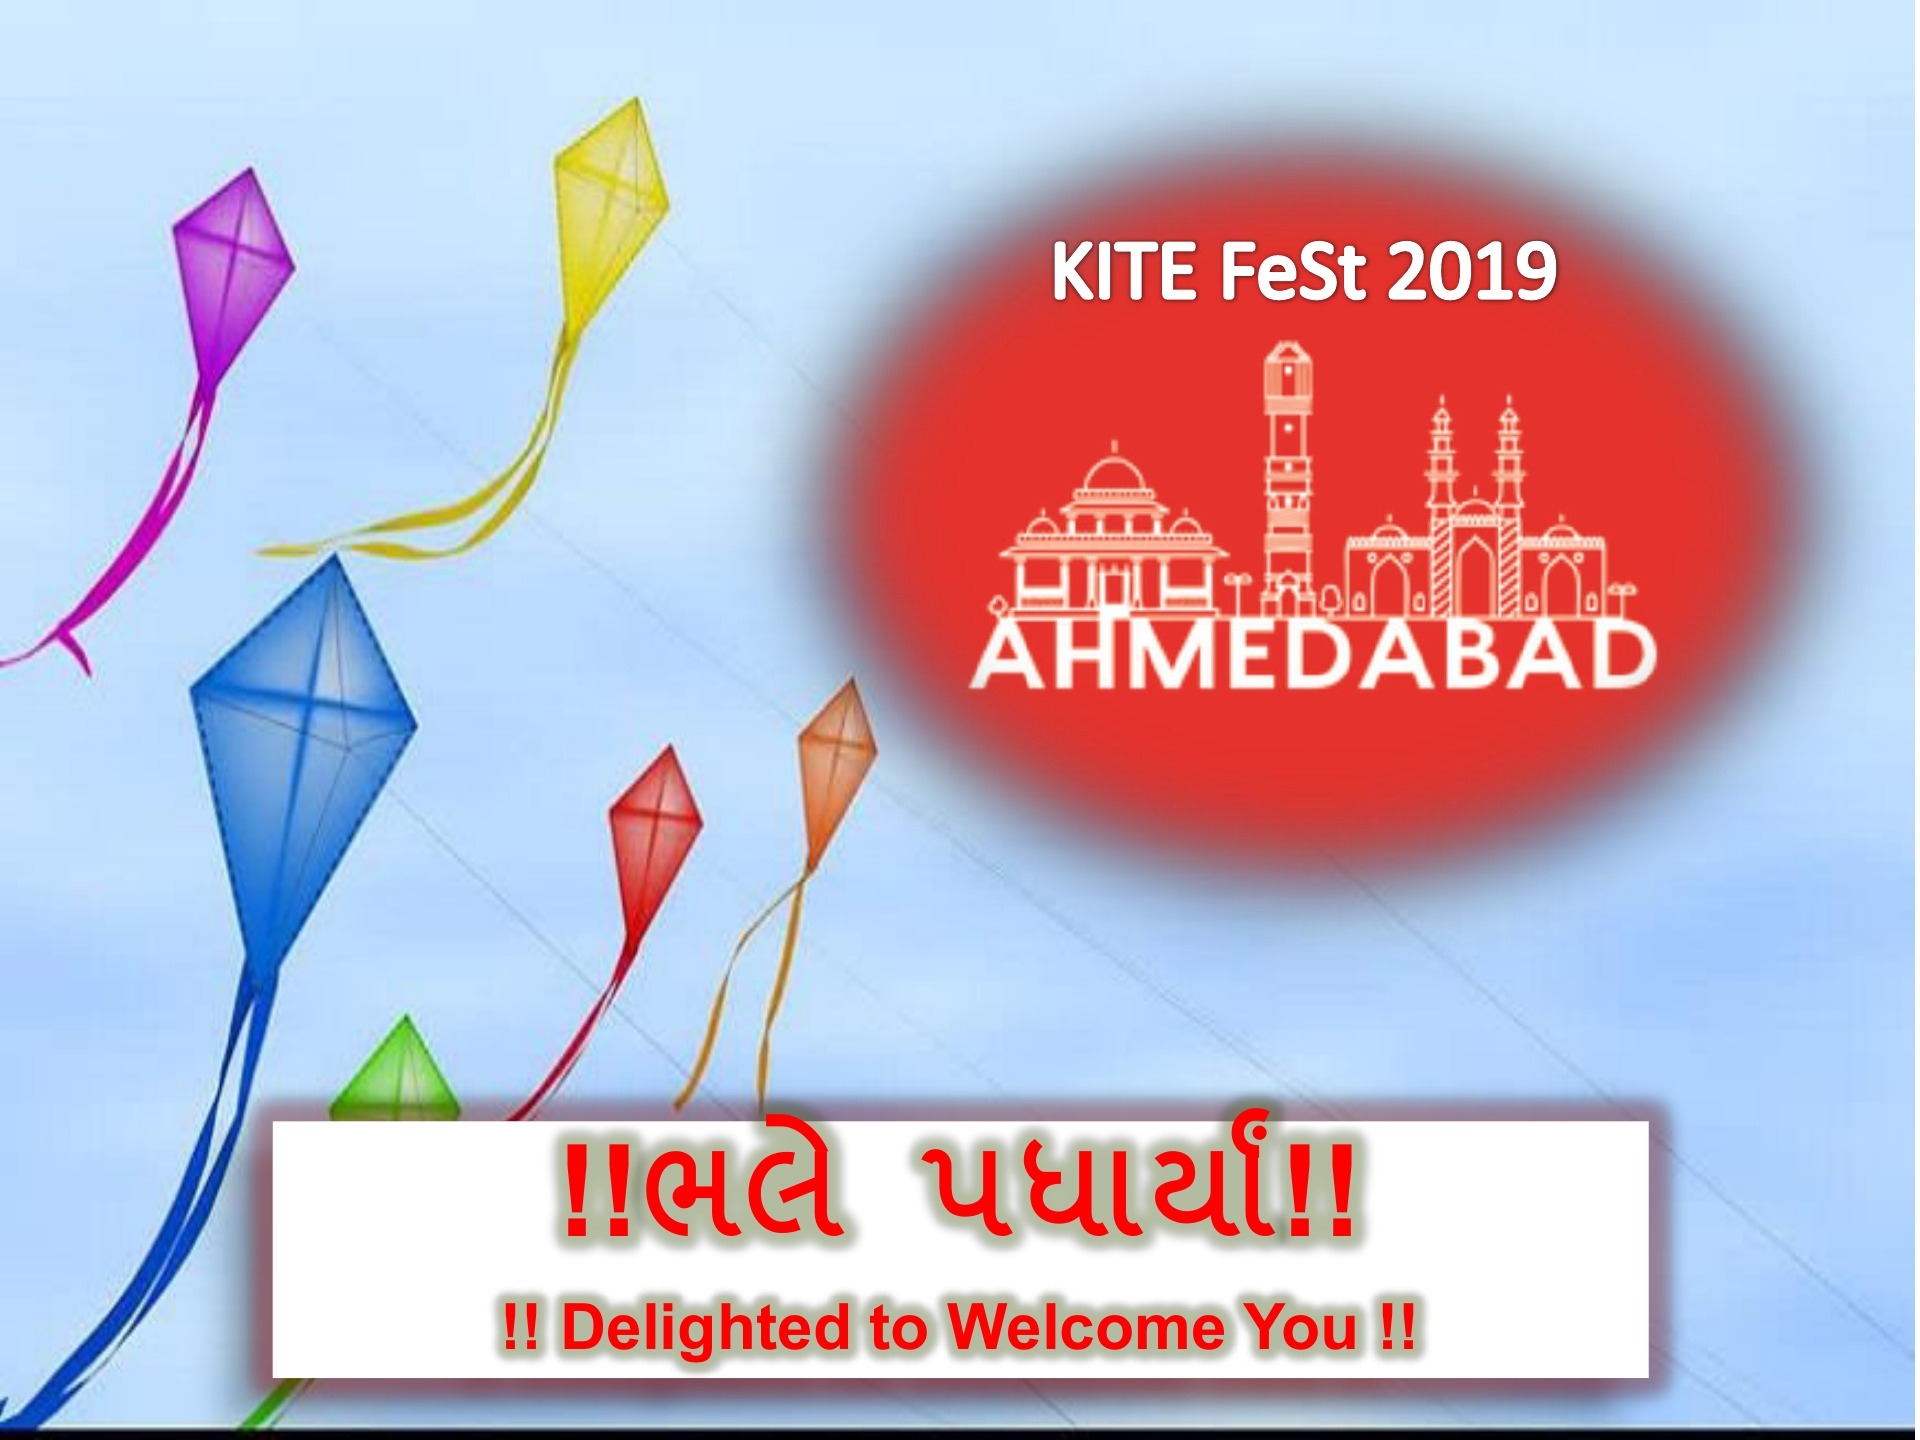 Kite Fest 2019